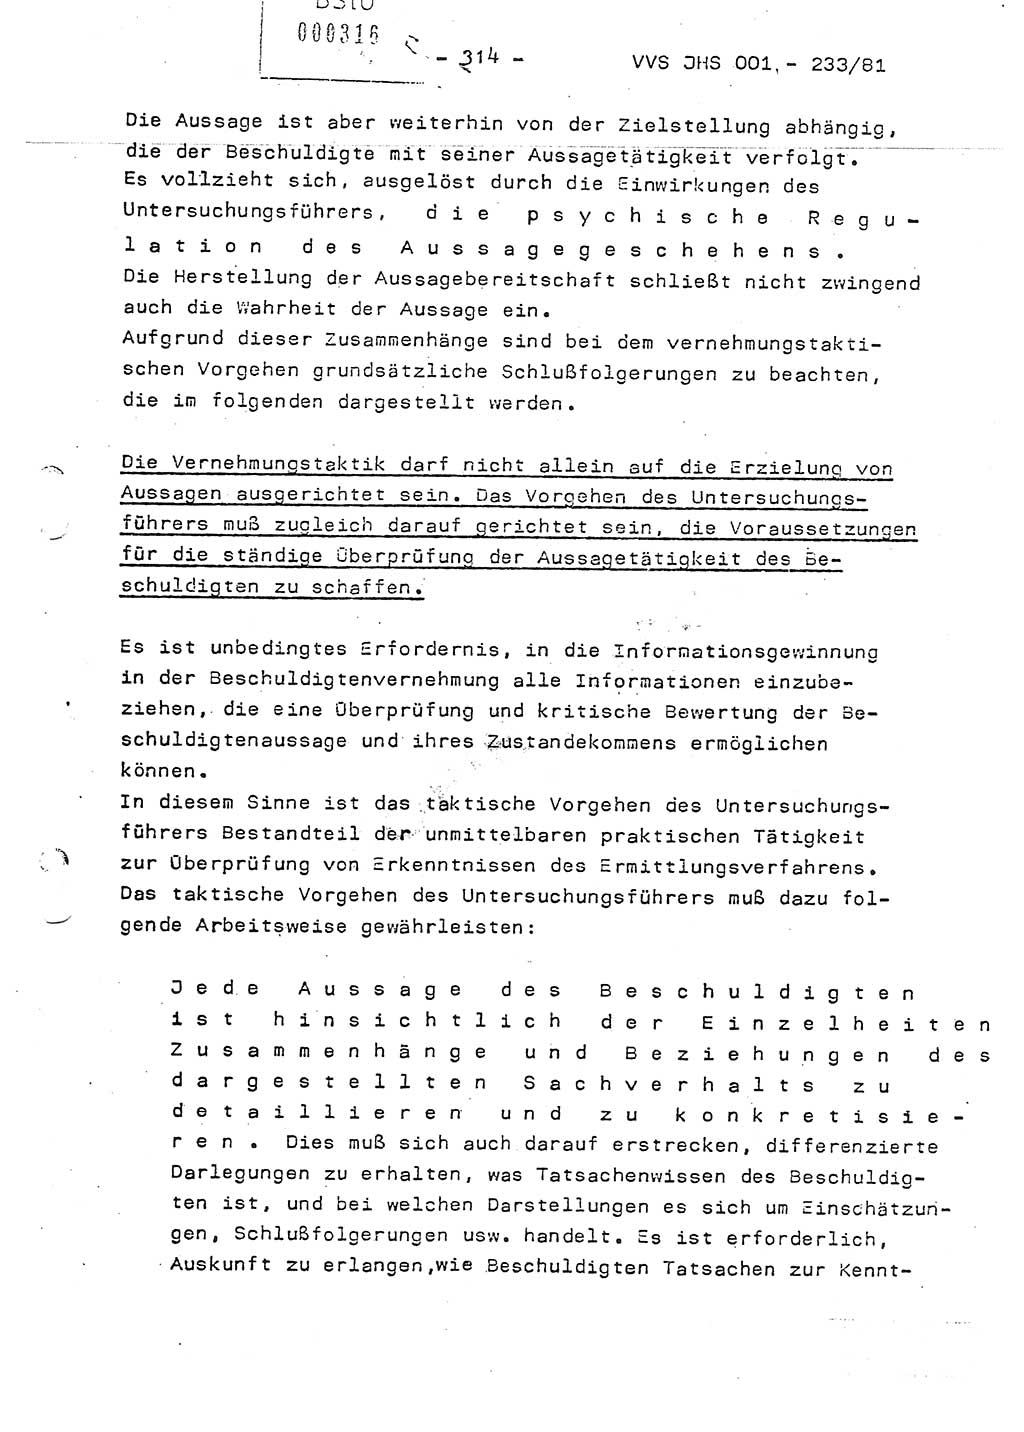 Dissertation Oberstleutnant Horst Zank (JHS), Oberstleutnant Dr. Karl-Heinz Knoblauch (JHS), Oberstleutnant Gustav-Adolf Kowalewski (HA Ⅸ), Oberstleutnant Wolfgang Plötner (HA Ⅸ), Ministerium für Staatssicherheit (MfS) [Deutsche Demokratische Republik (DDR)], Juristische Hochschule (JHS), Vertrauliche Verschlußsache (VVS) o001-233/81, Potsdam 1981, Blatt 314 (Diss. MfS DDR JHS VVS o001-233/81 1981, Bl. 314)